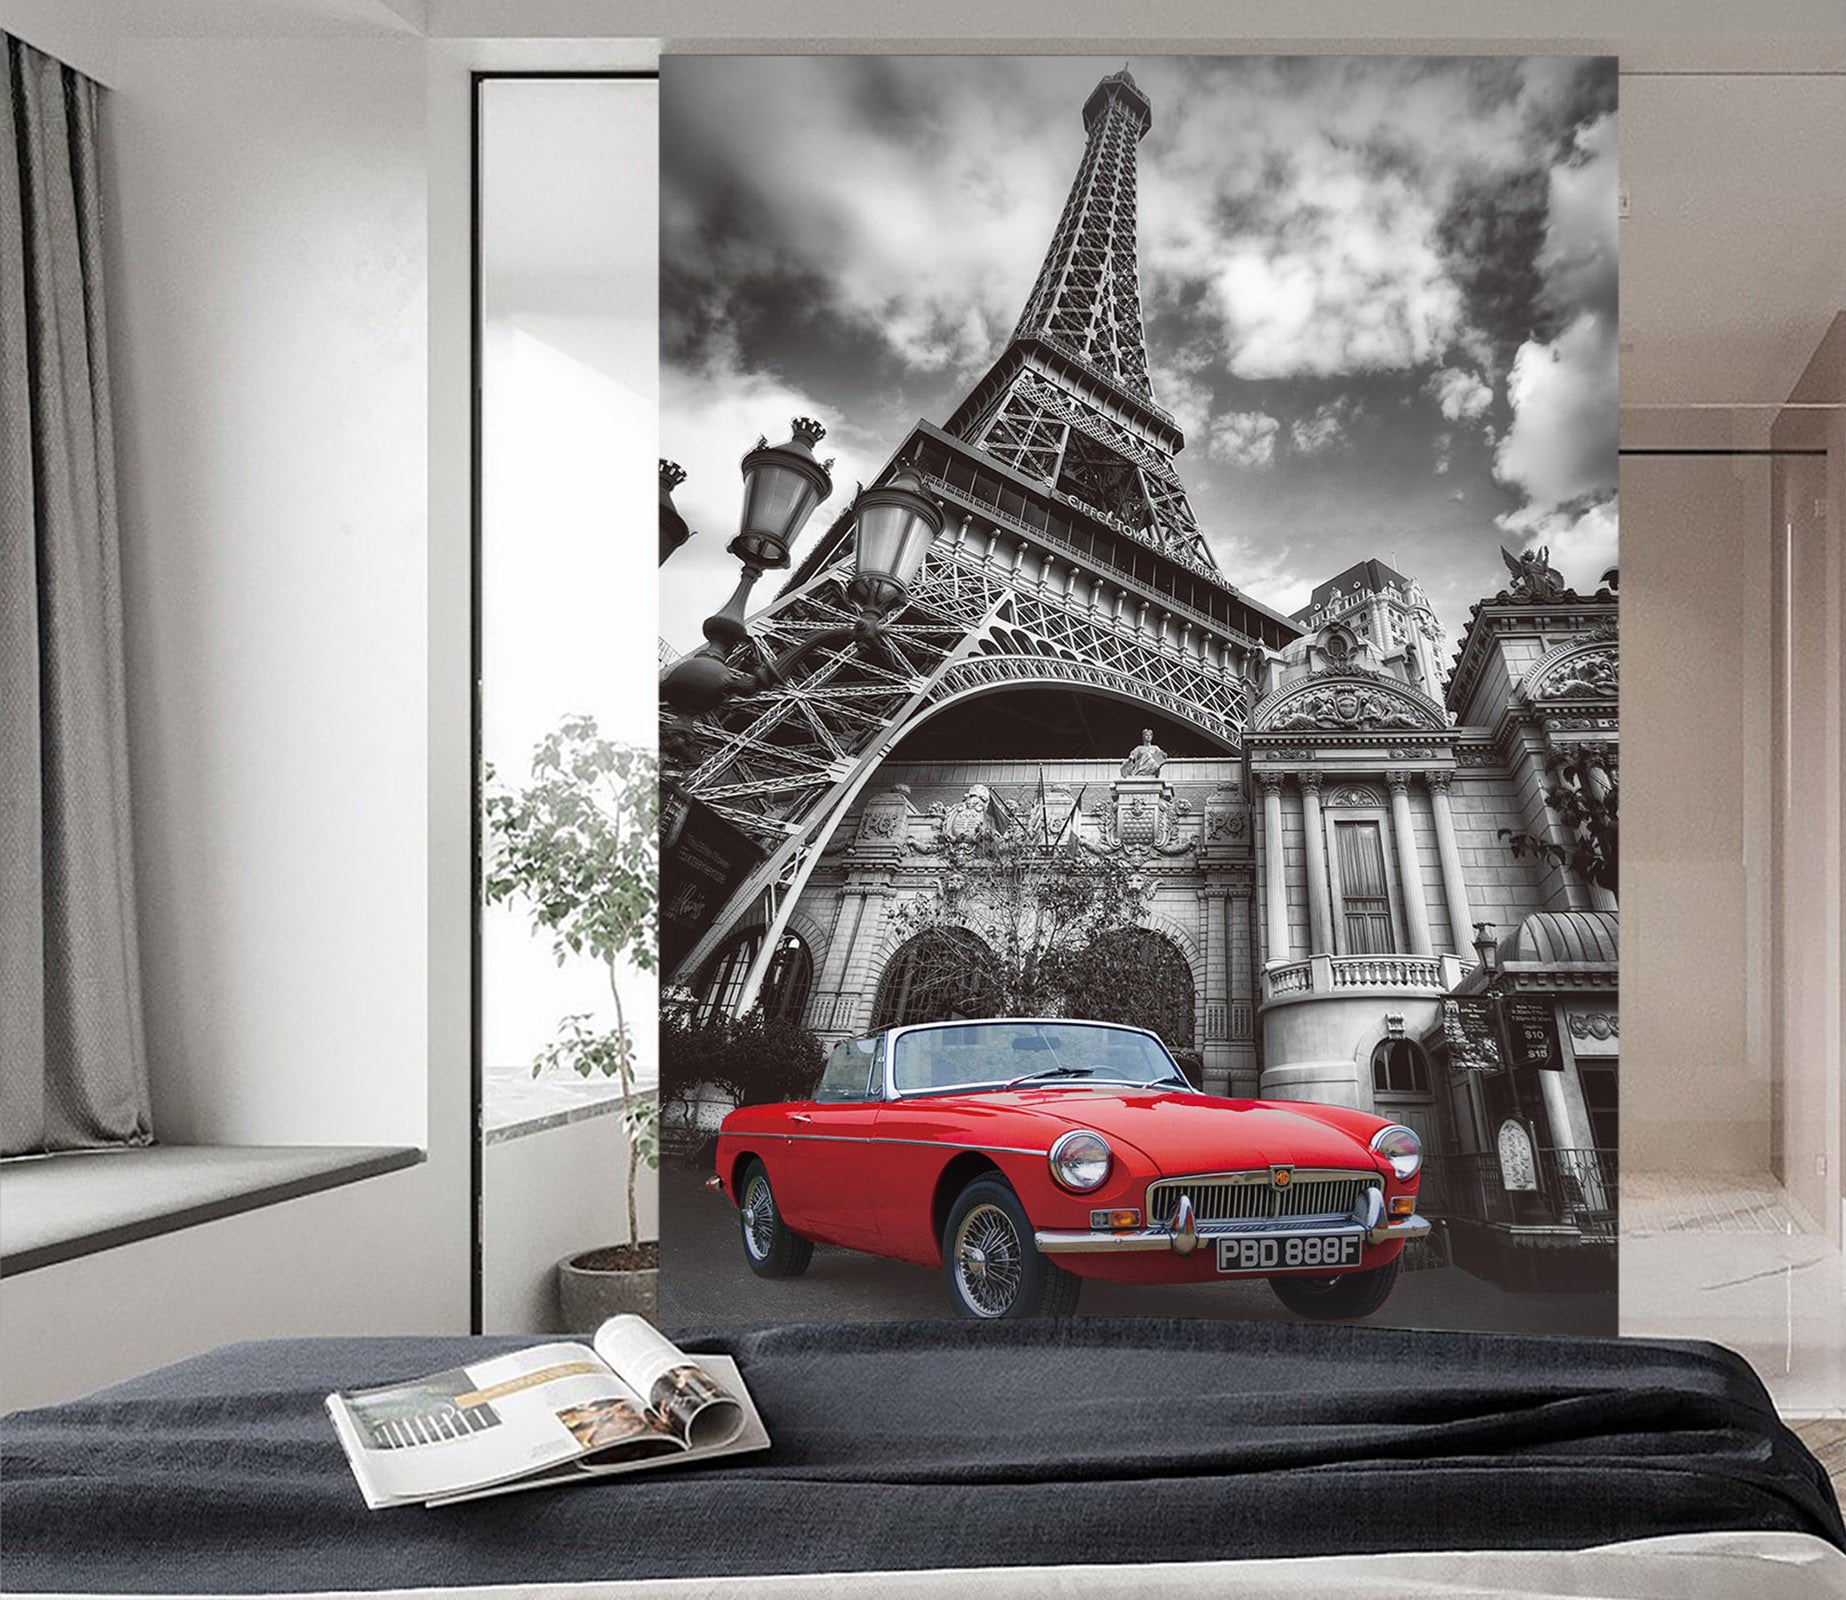 3D Eiffel Tower Villa Car 439 Vehicle Wall Murals